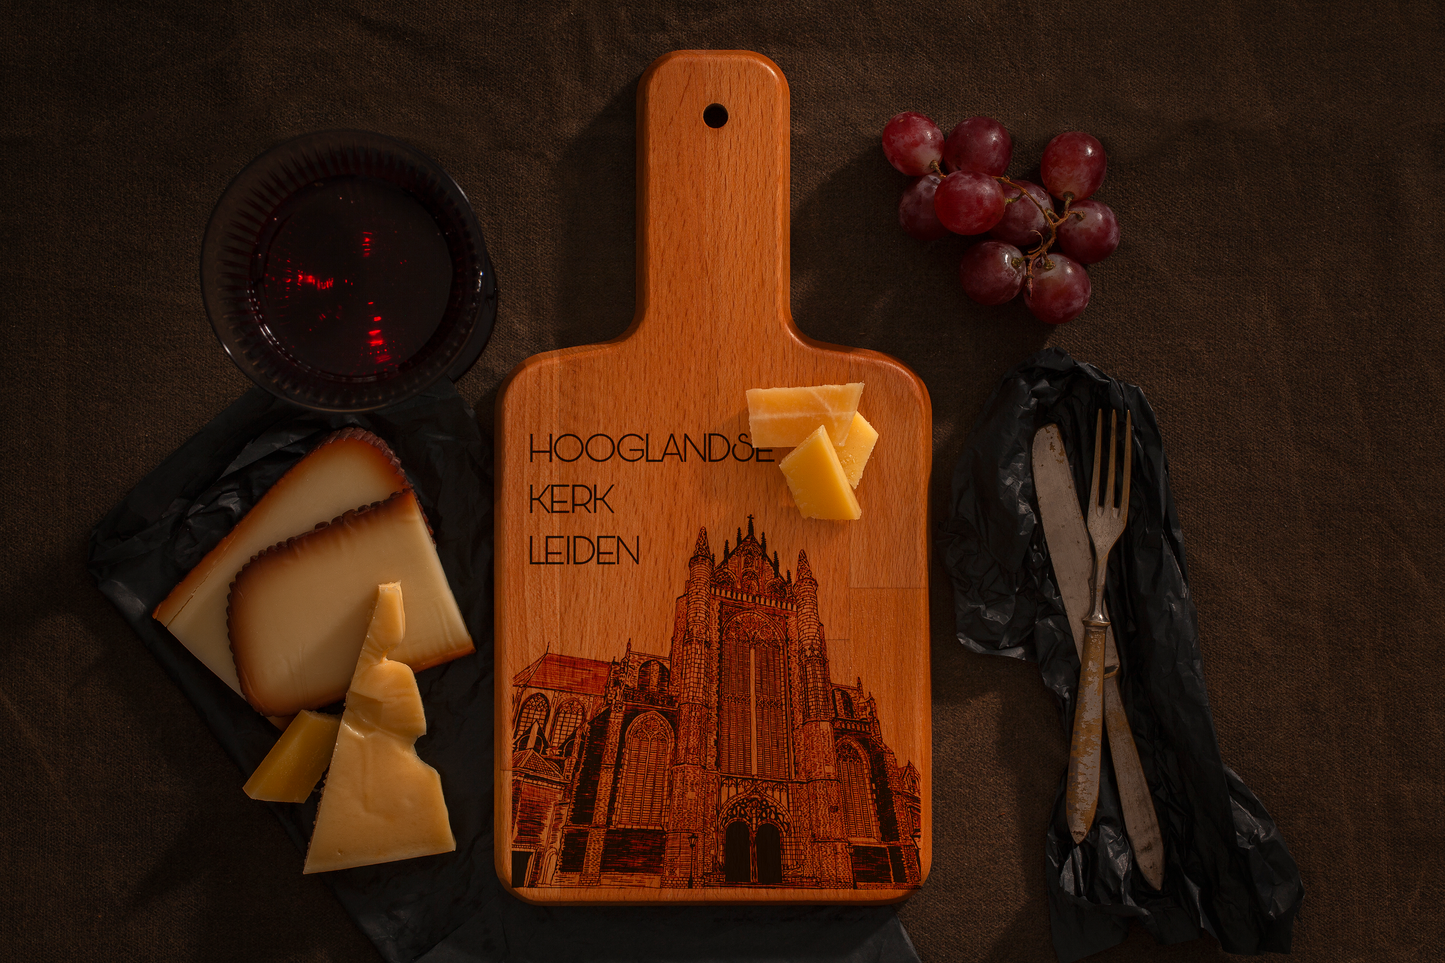 Leiden, Hooglandse Kerk, cheese board, with cheese